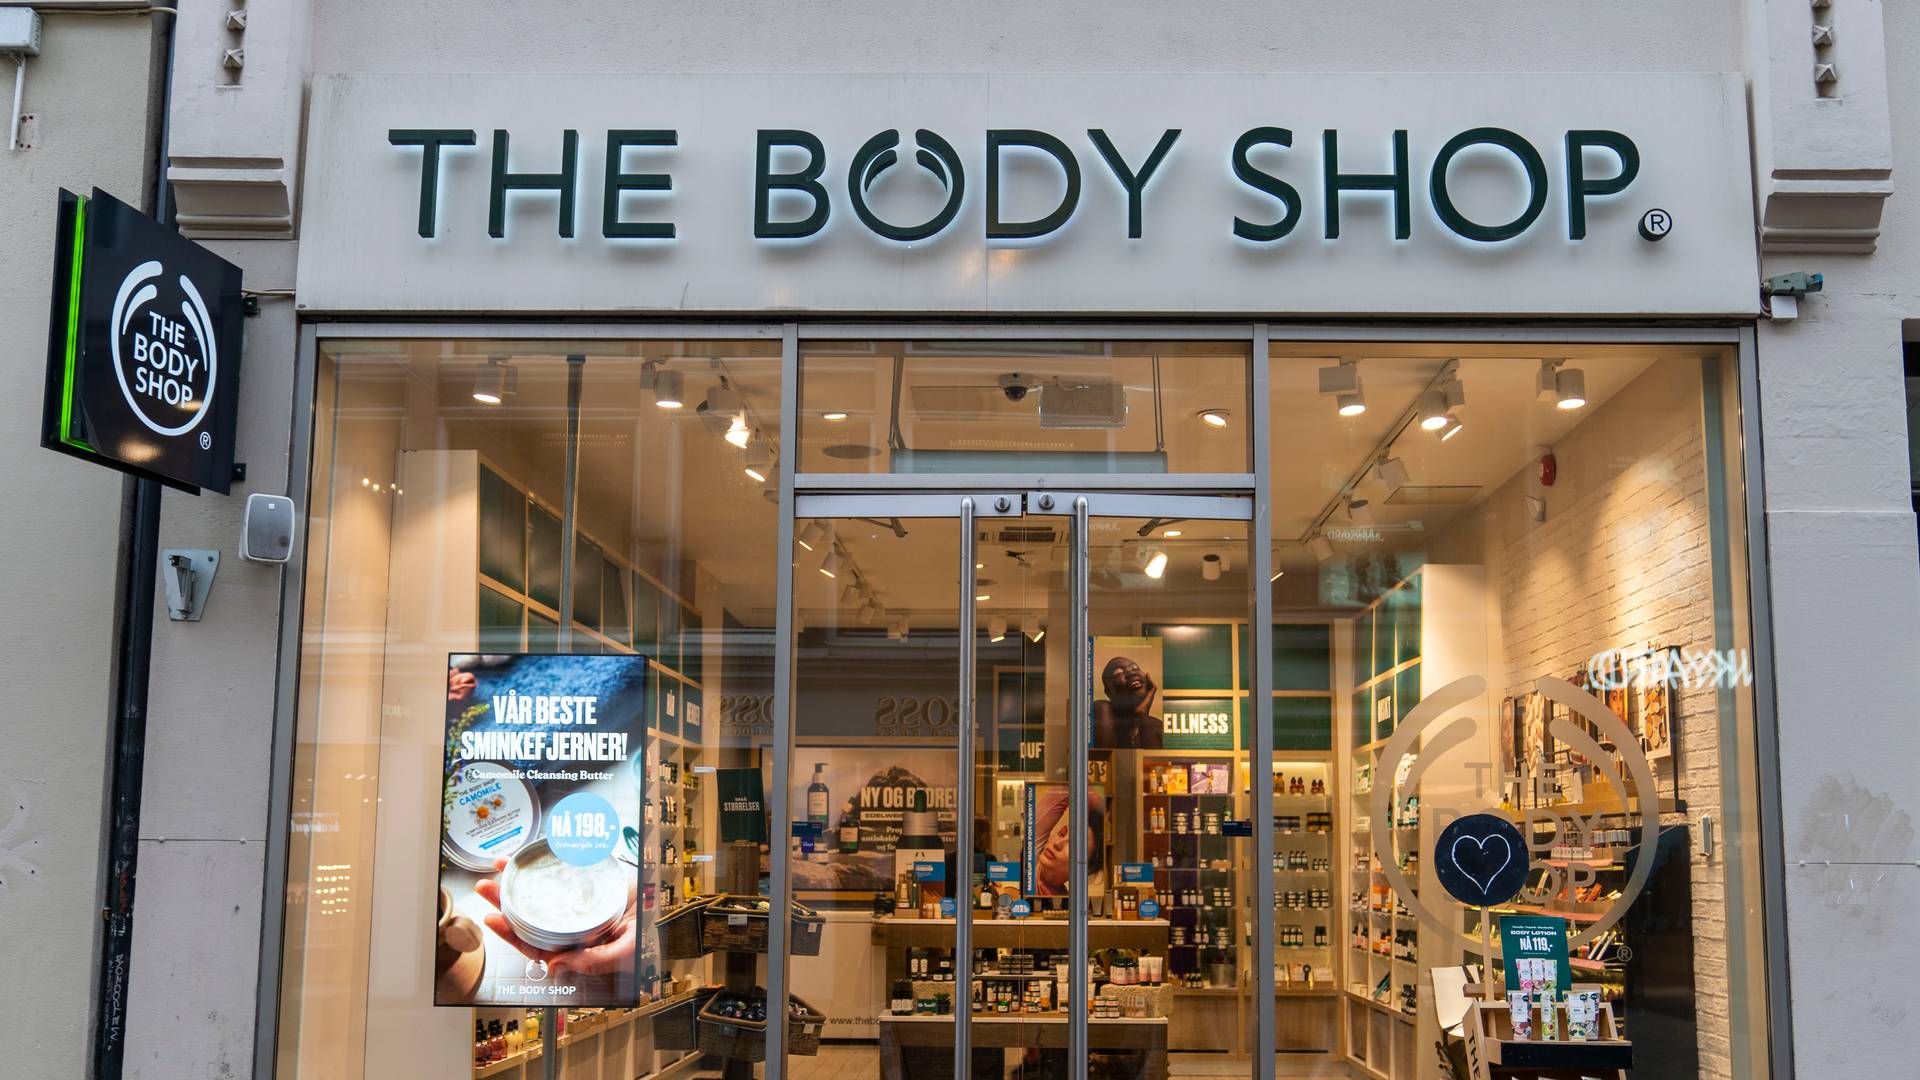 The Body Shop har mere end 200 butikker i Storbritannien og blev grundlagt i 1976 af Anita Roddick, der ud over iværksætter var miljøforkæmper. | Foto: Ludvig Heiberg Larsen / NTB